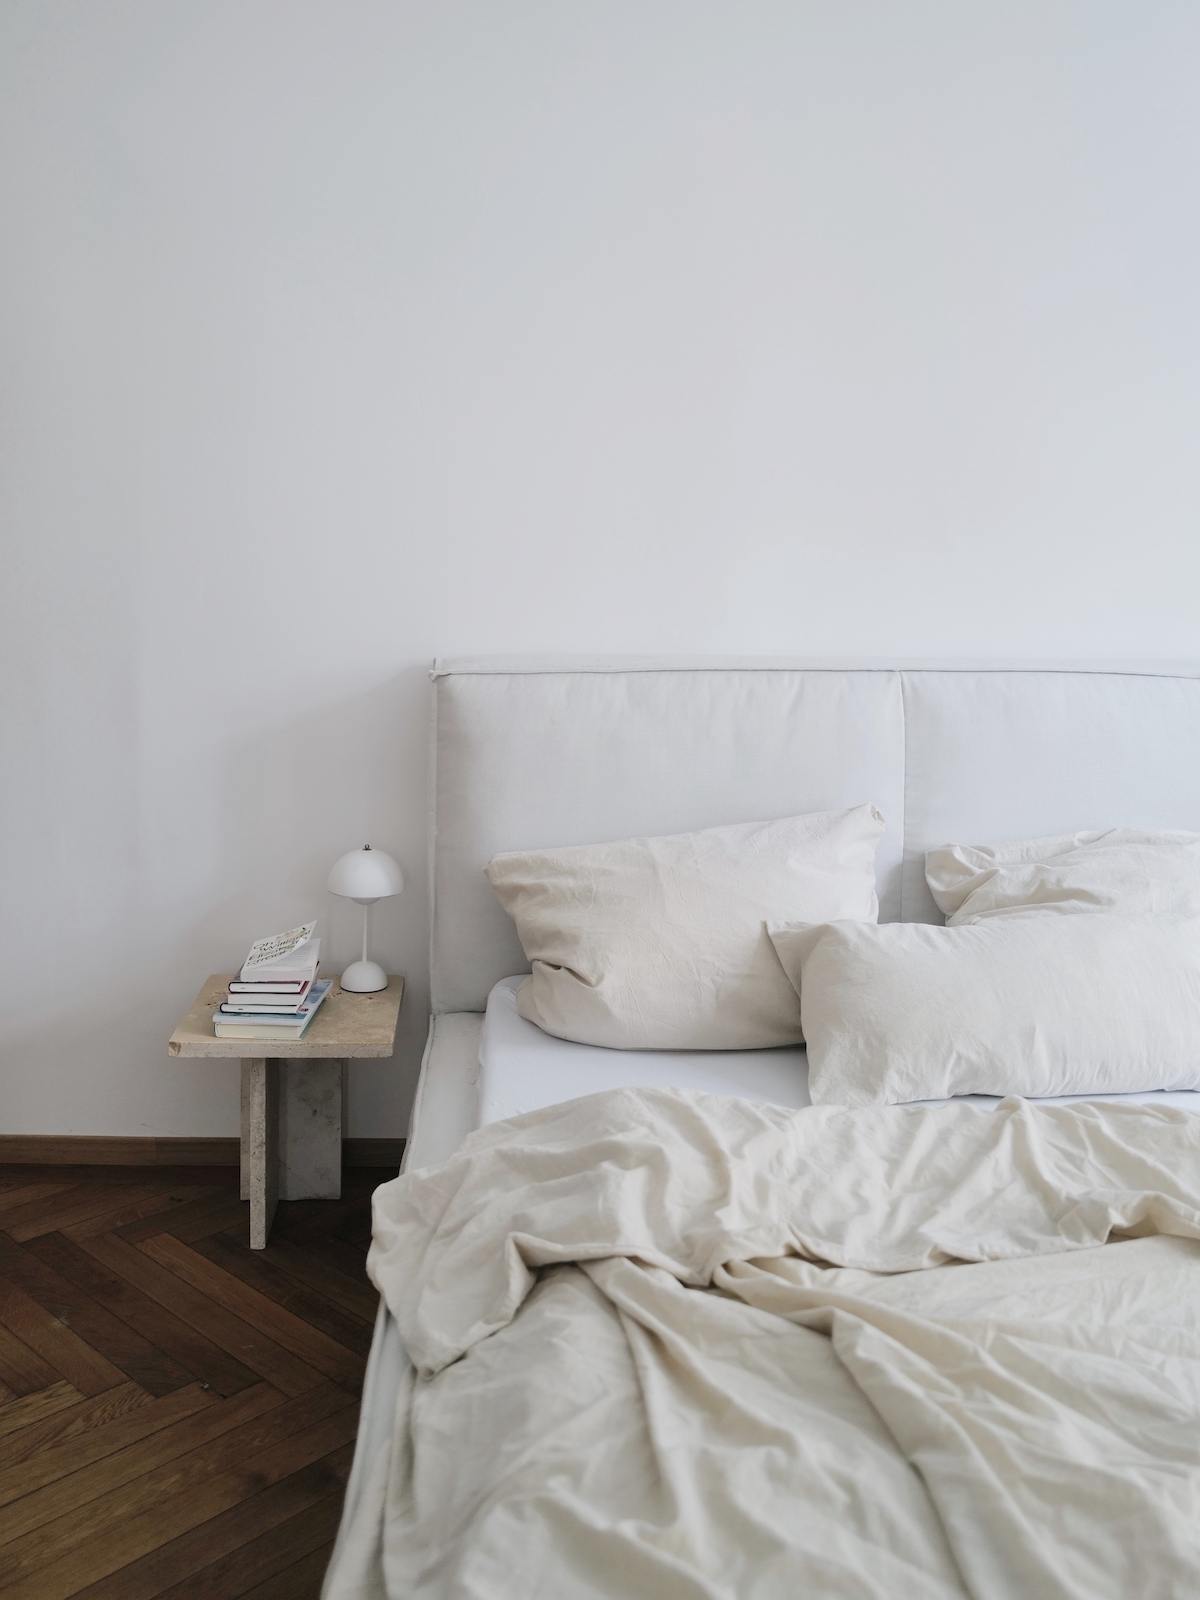 Bett mit gepolstertem Rahmen in Eierschalenfarben, dazu cremeweiße Bettwäsche und ein kleiner Beistelltisch aus hellem Naturstein. 